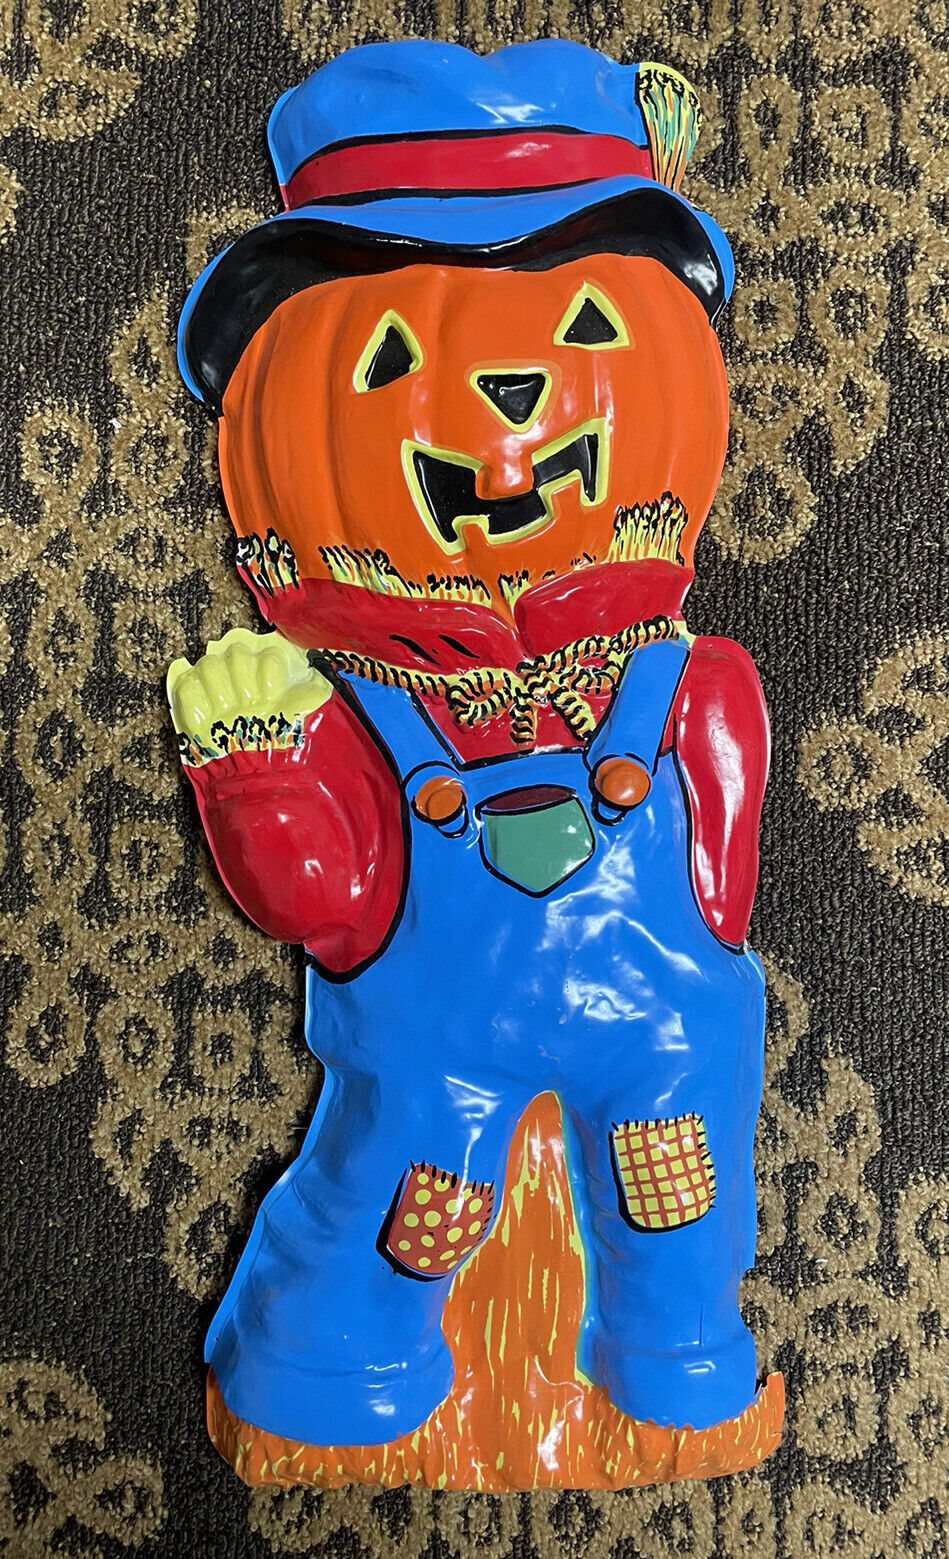 Vintage 1977 Vacuform Scarecrow Artform Industries Halloween Decor Retro Pumpkin